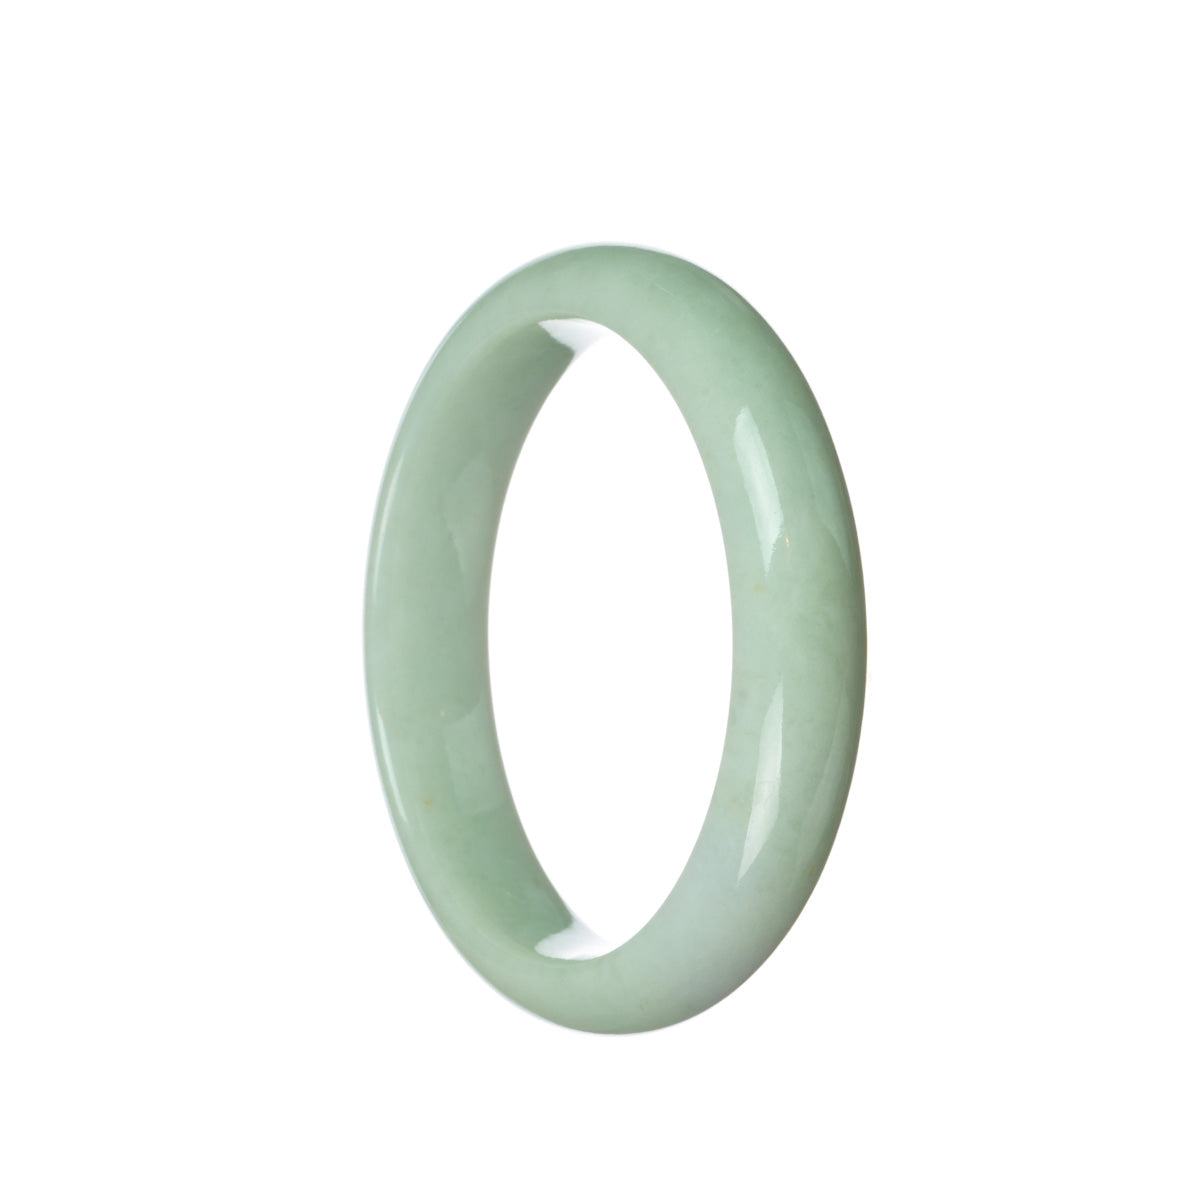 Real Grade A Light green Jadeite Jade Bangle Bracelet - 60mm Half Moon